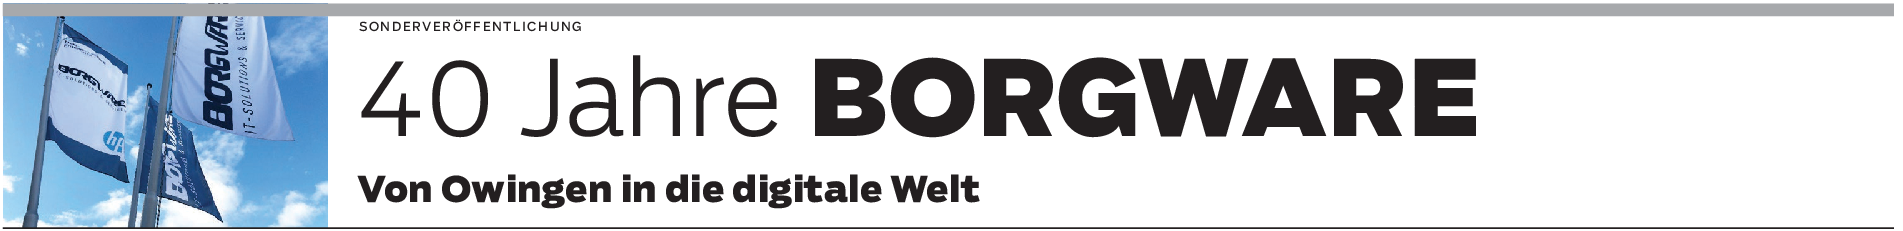 Borgware in Owingen: Führender IT-Spezialist in der Region